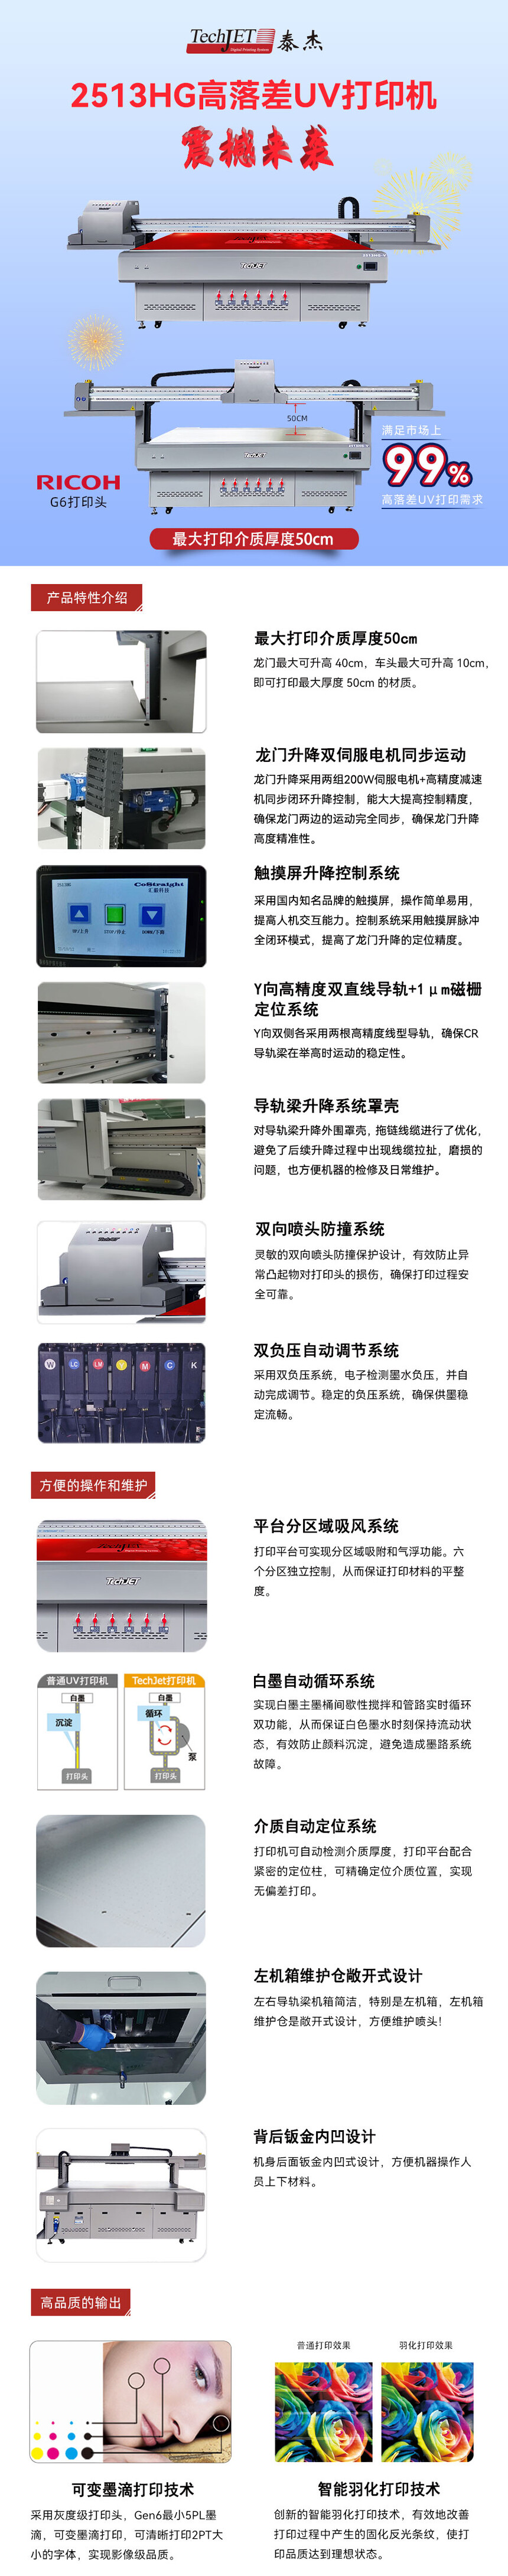 2513HG高落差UV打印机中文产品说明网站版-.jpg